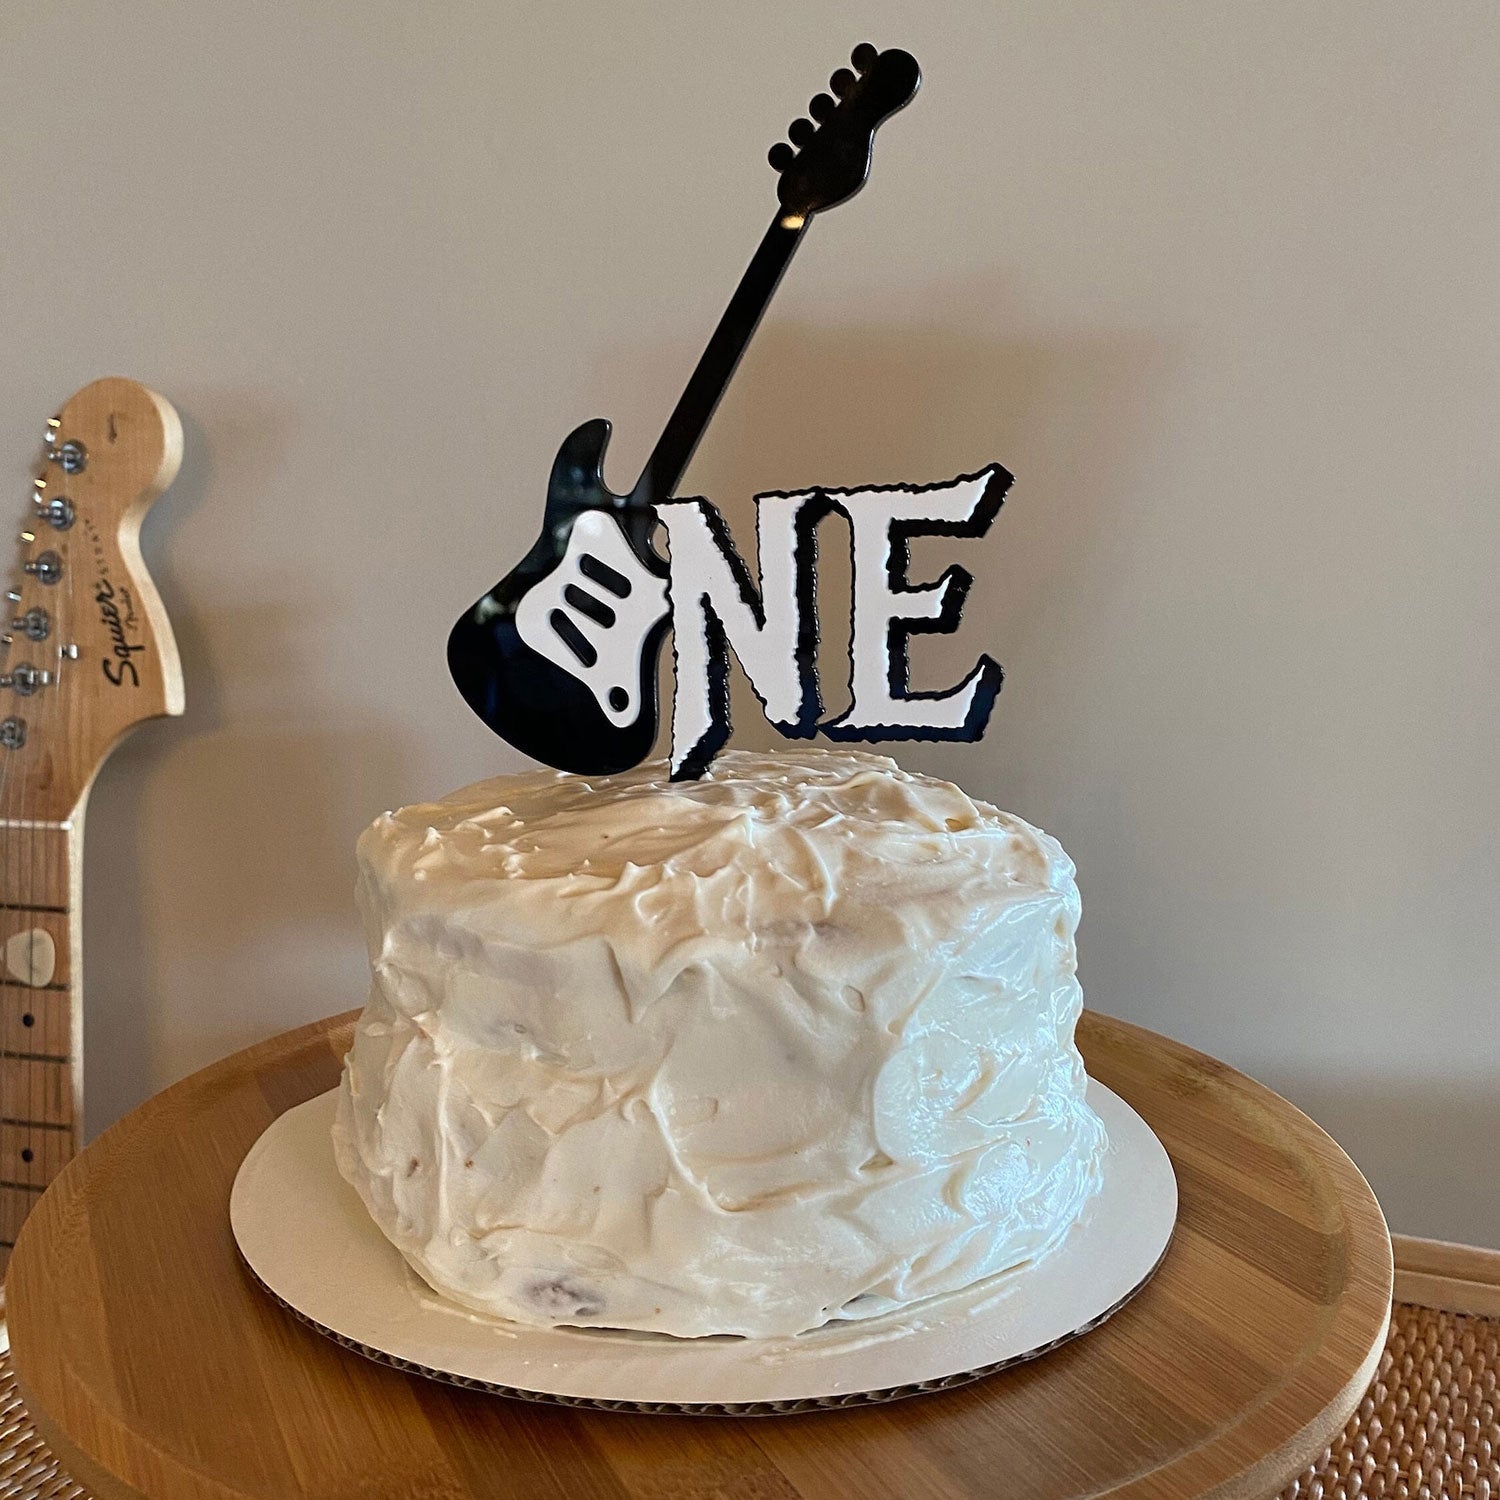 Purple Guitar Birthday Cake Design by nemeigh on DeviantArt